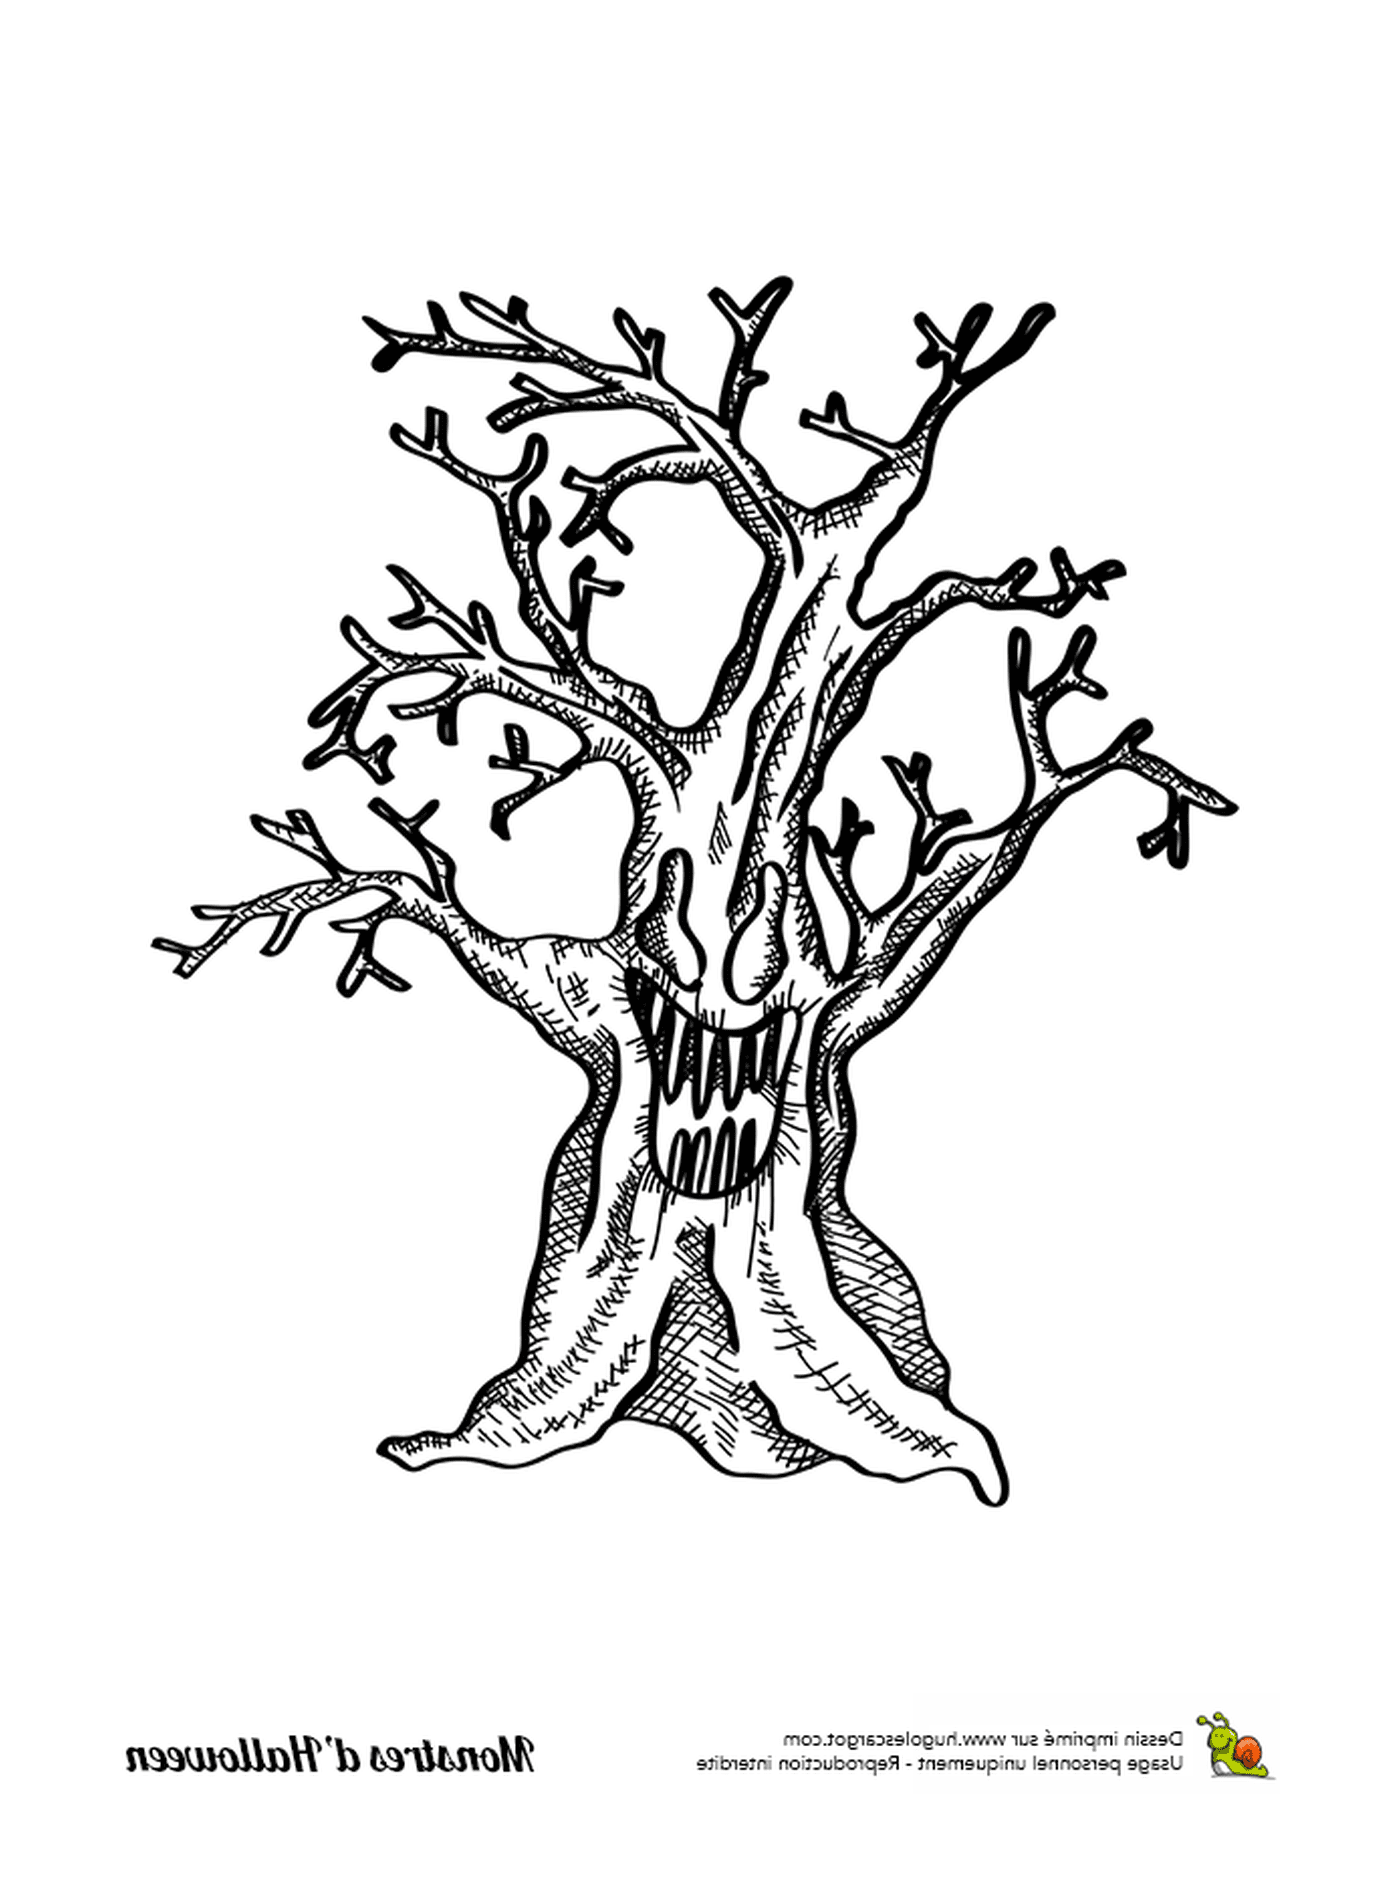  Чернила, старое дерево без листьев 